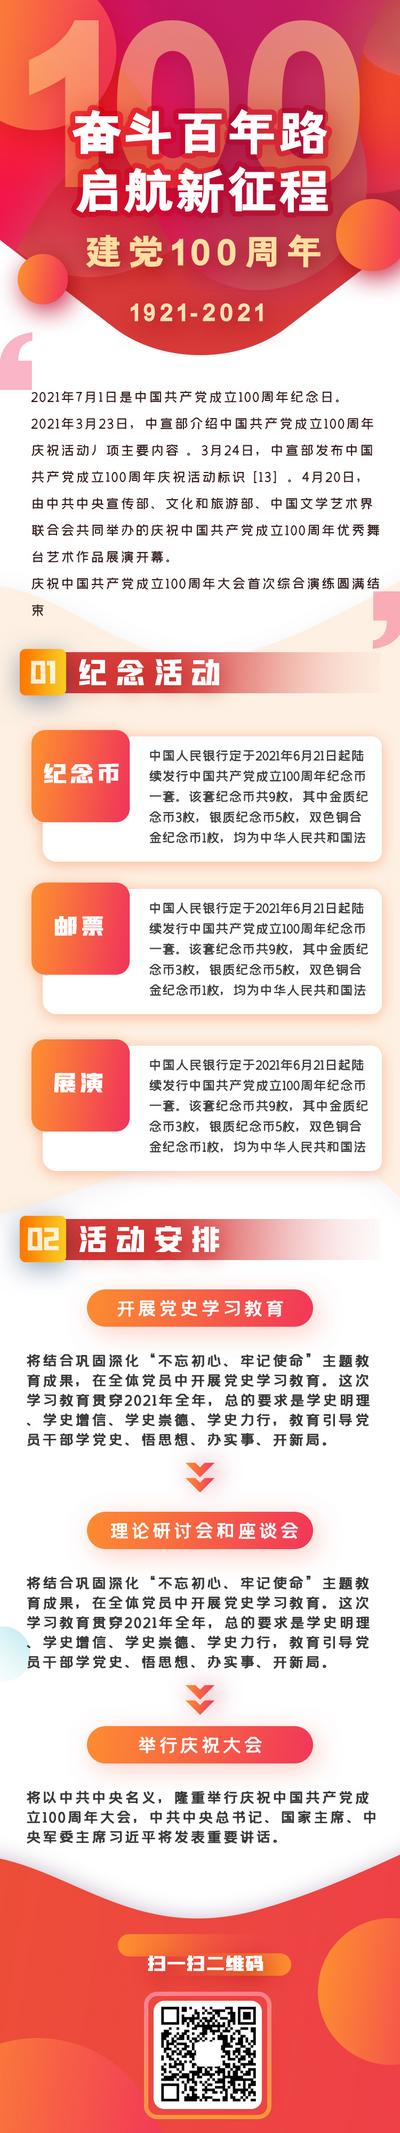 南门网 专题设计 长图 红色 建党 100周年 党政要闻